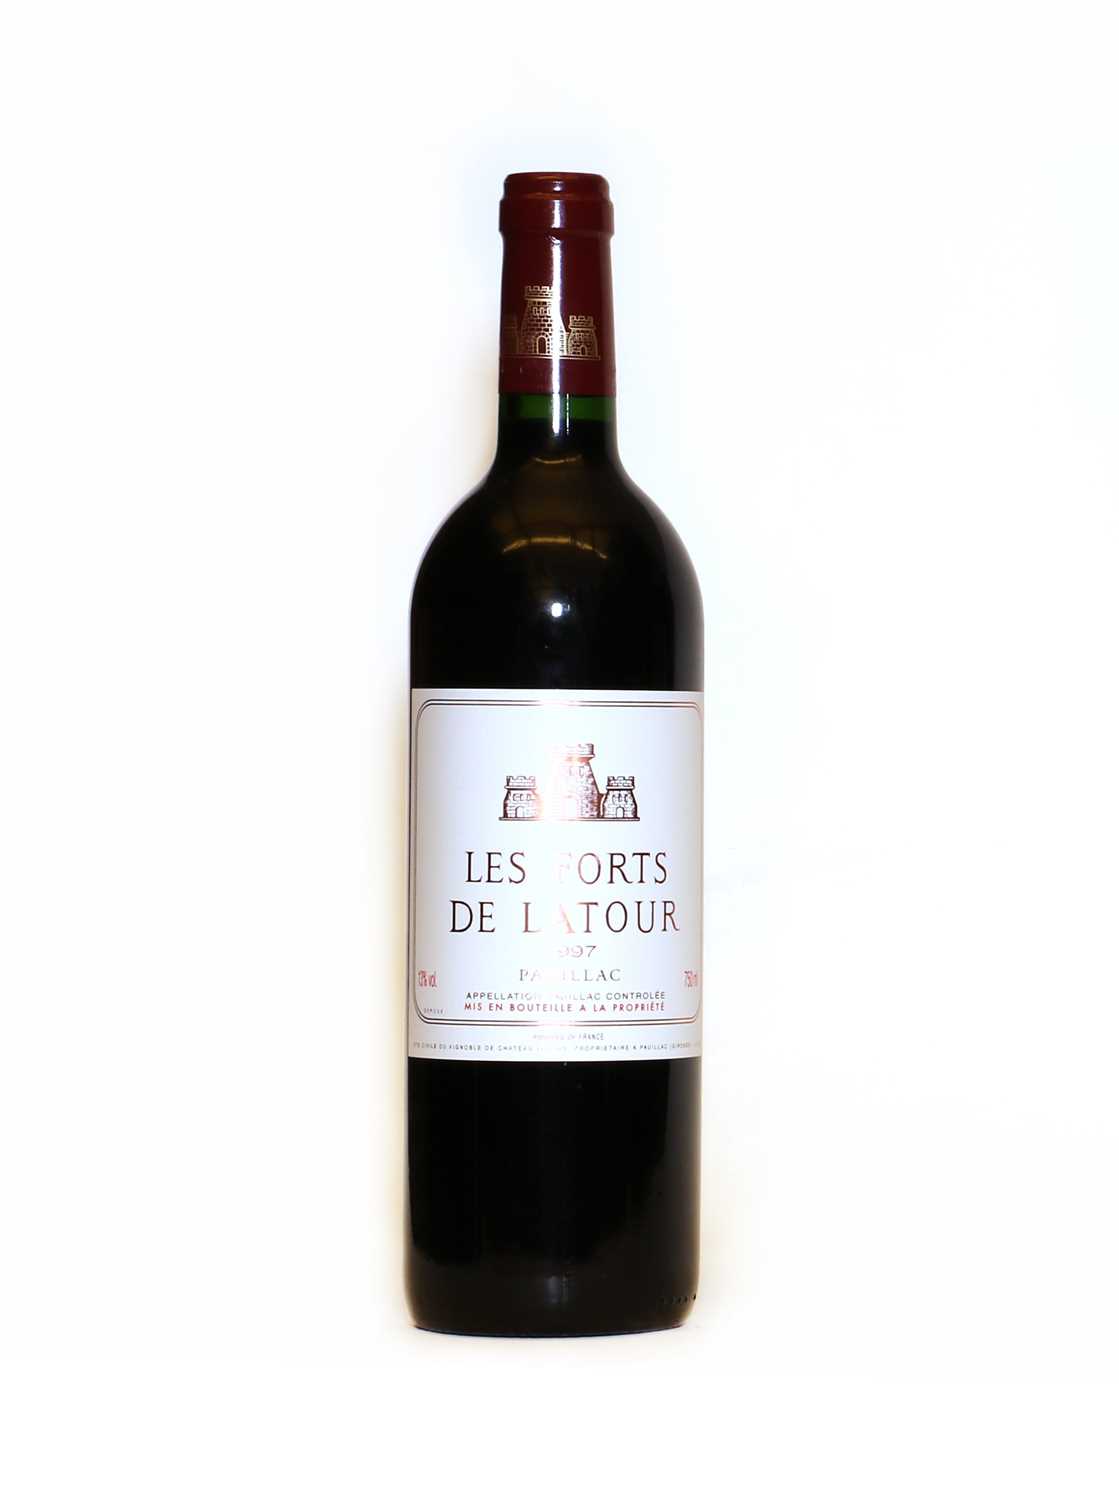 Les Forts de Latour, Pauillac, 1997, one bottle